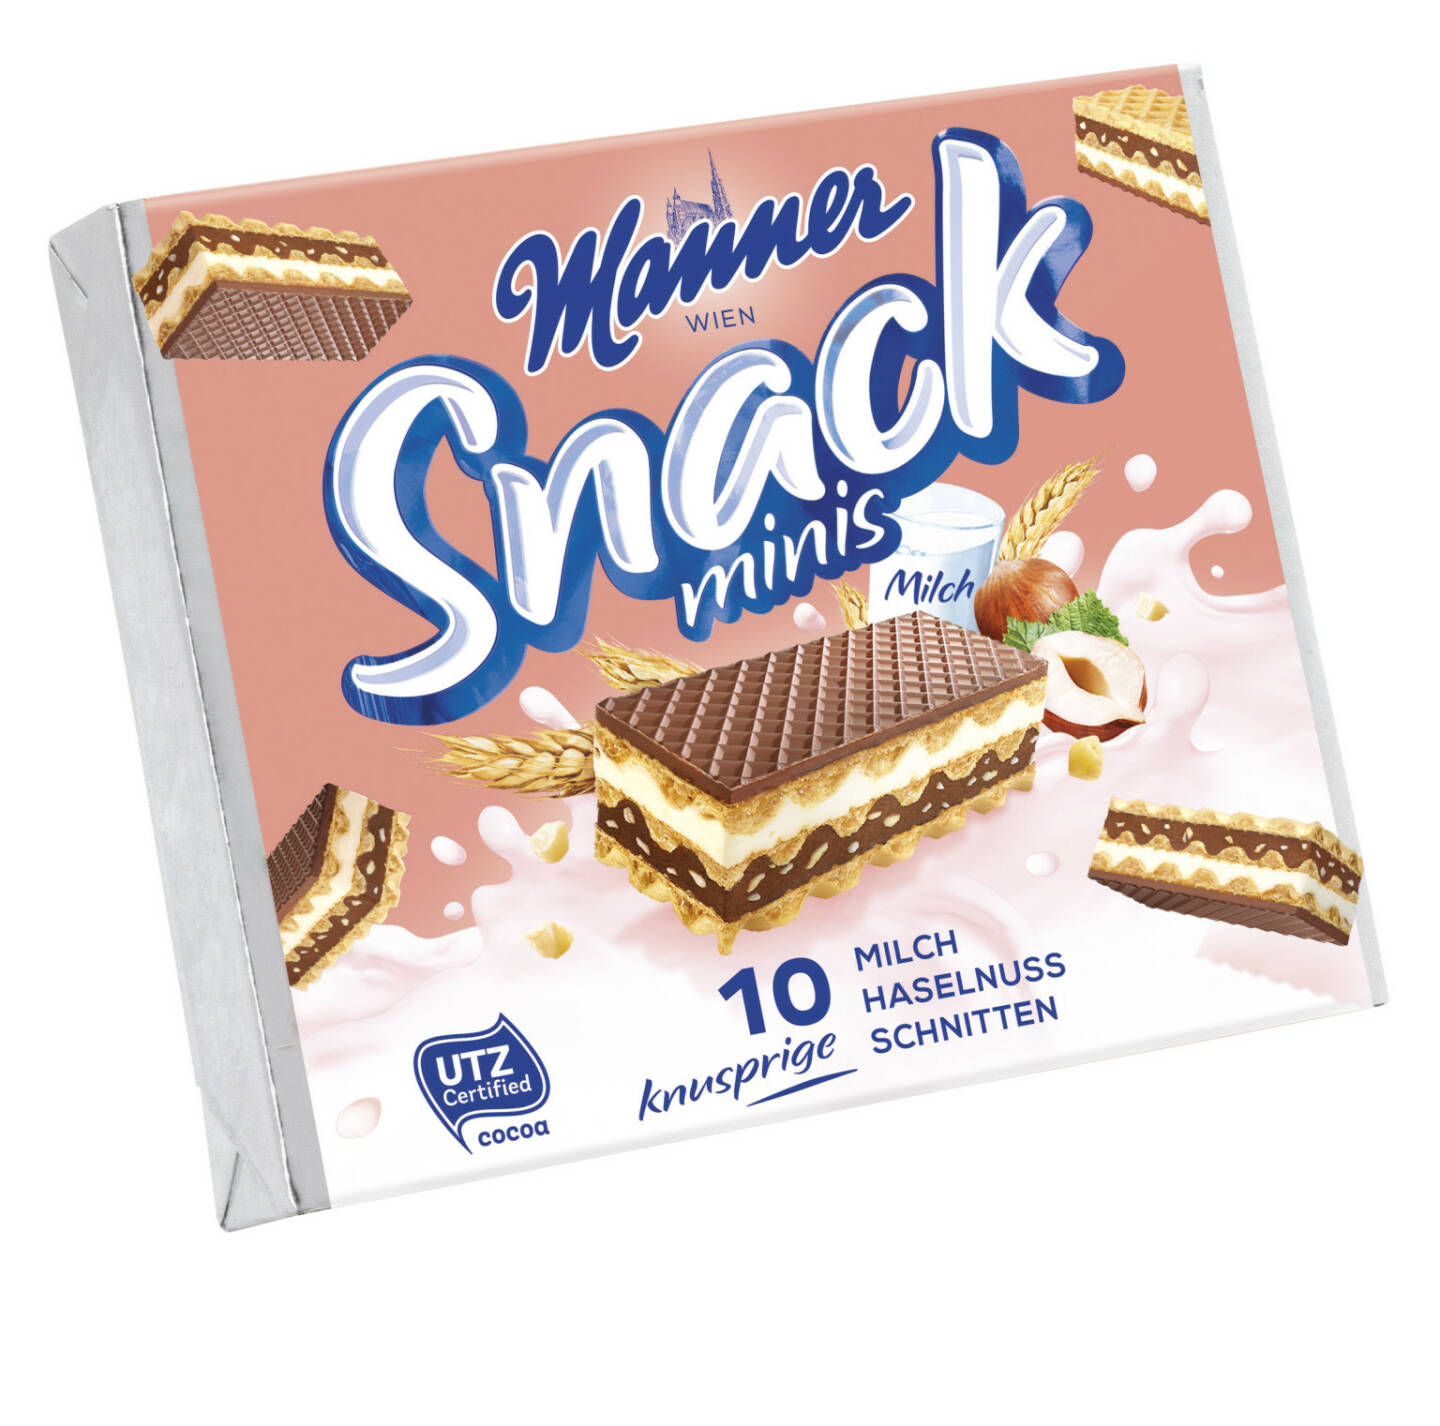 Neuprodukt Manner Snack Minis mit Milchcreme und Kakao aus eigener Röstung; Fotocredit: Manner